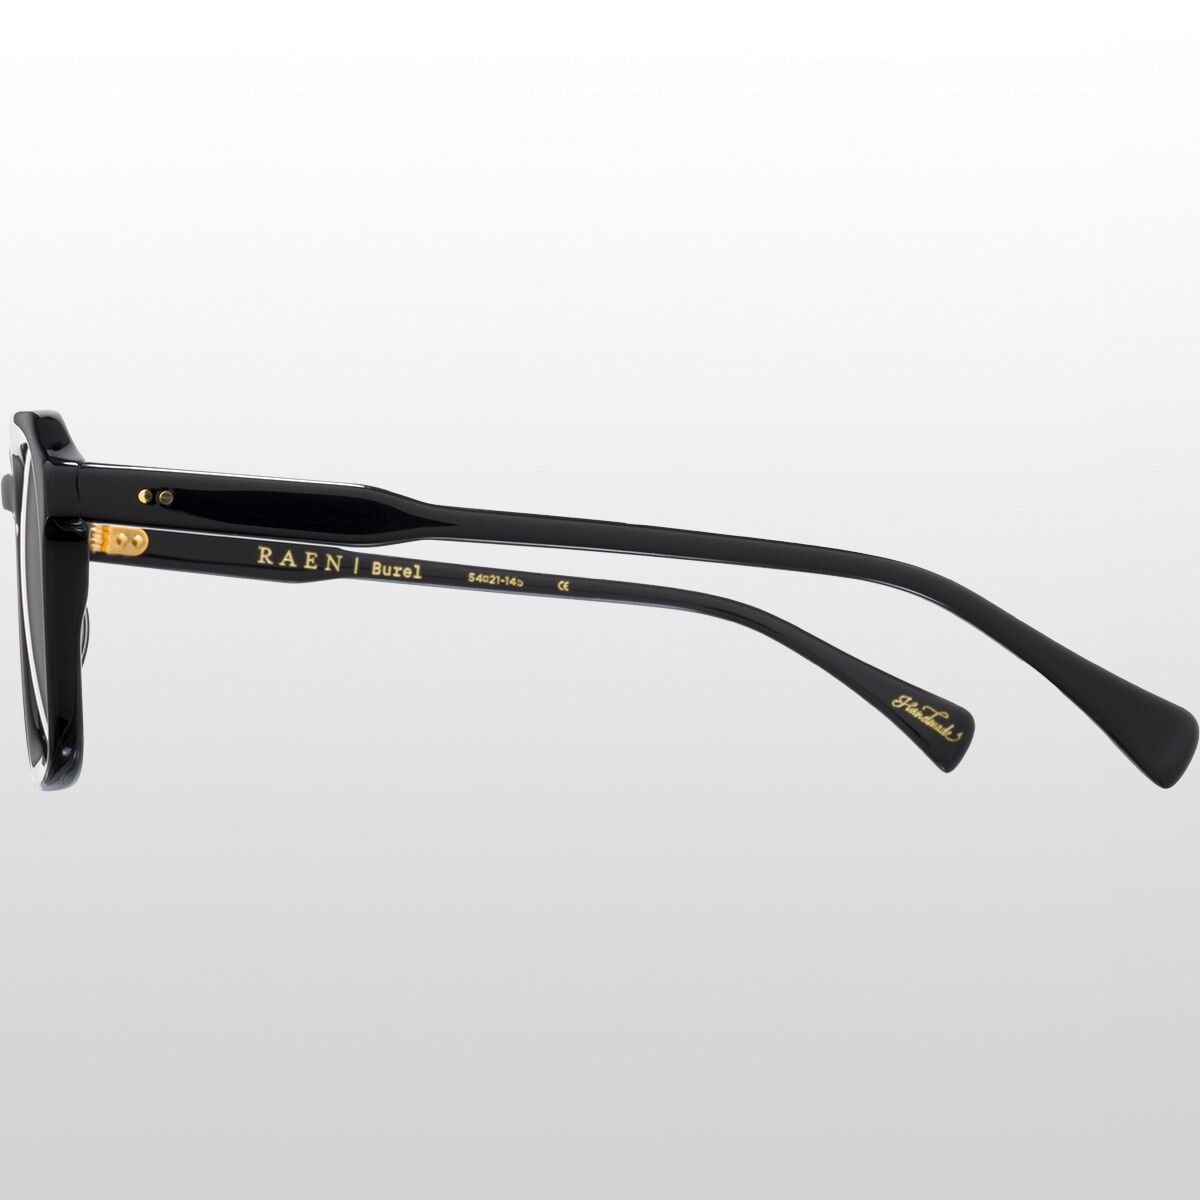 【ブリッジ】 (取寄) レーン オプティクス ブレル サングラス RAEN optics Burel Sunglasses Static